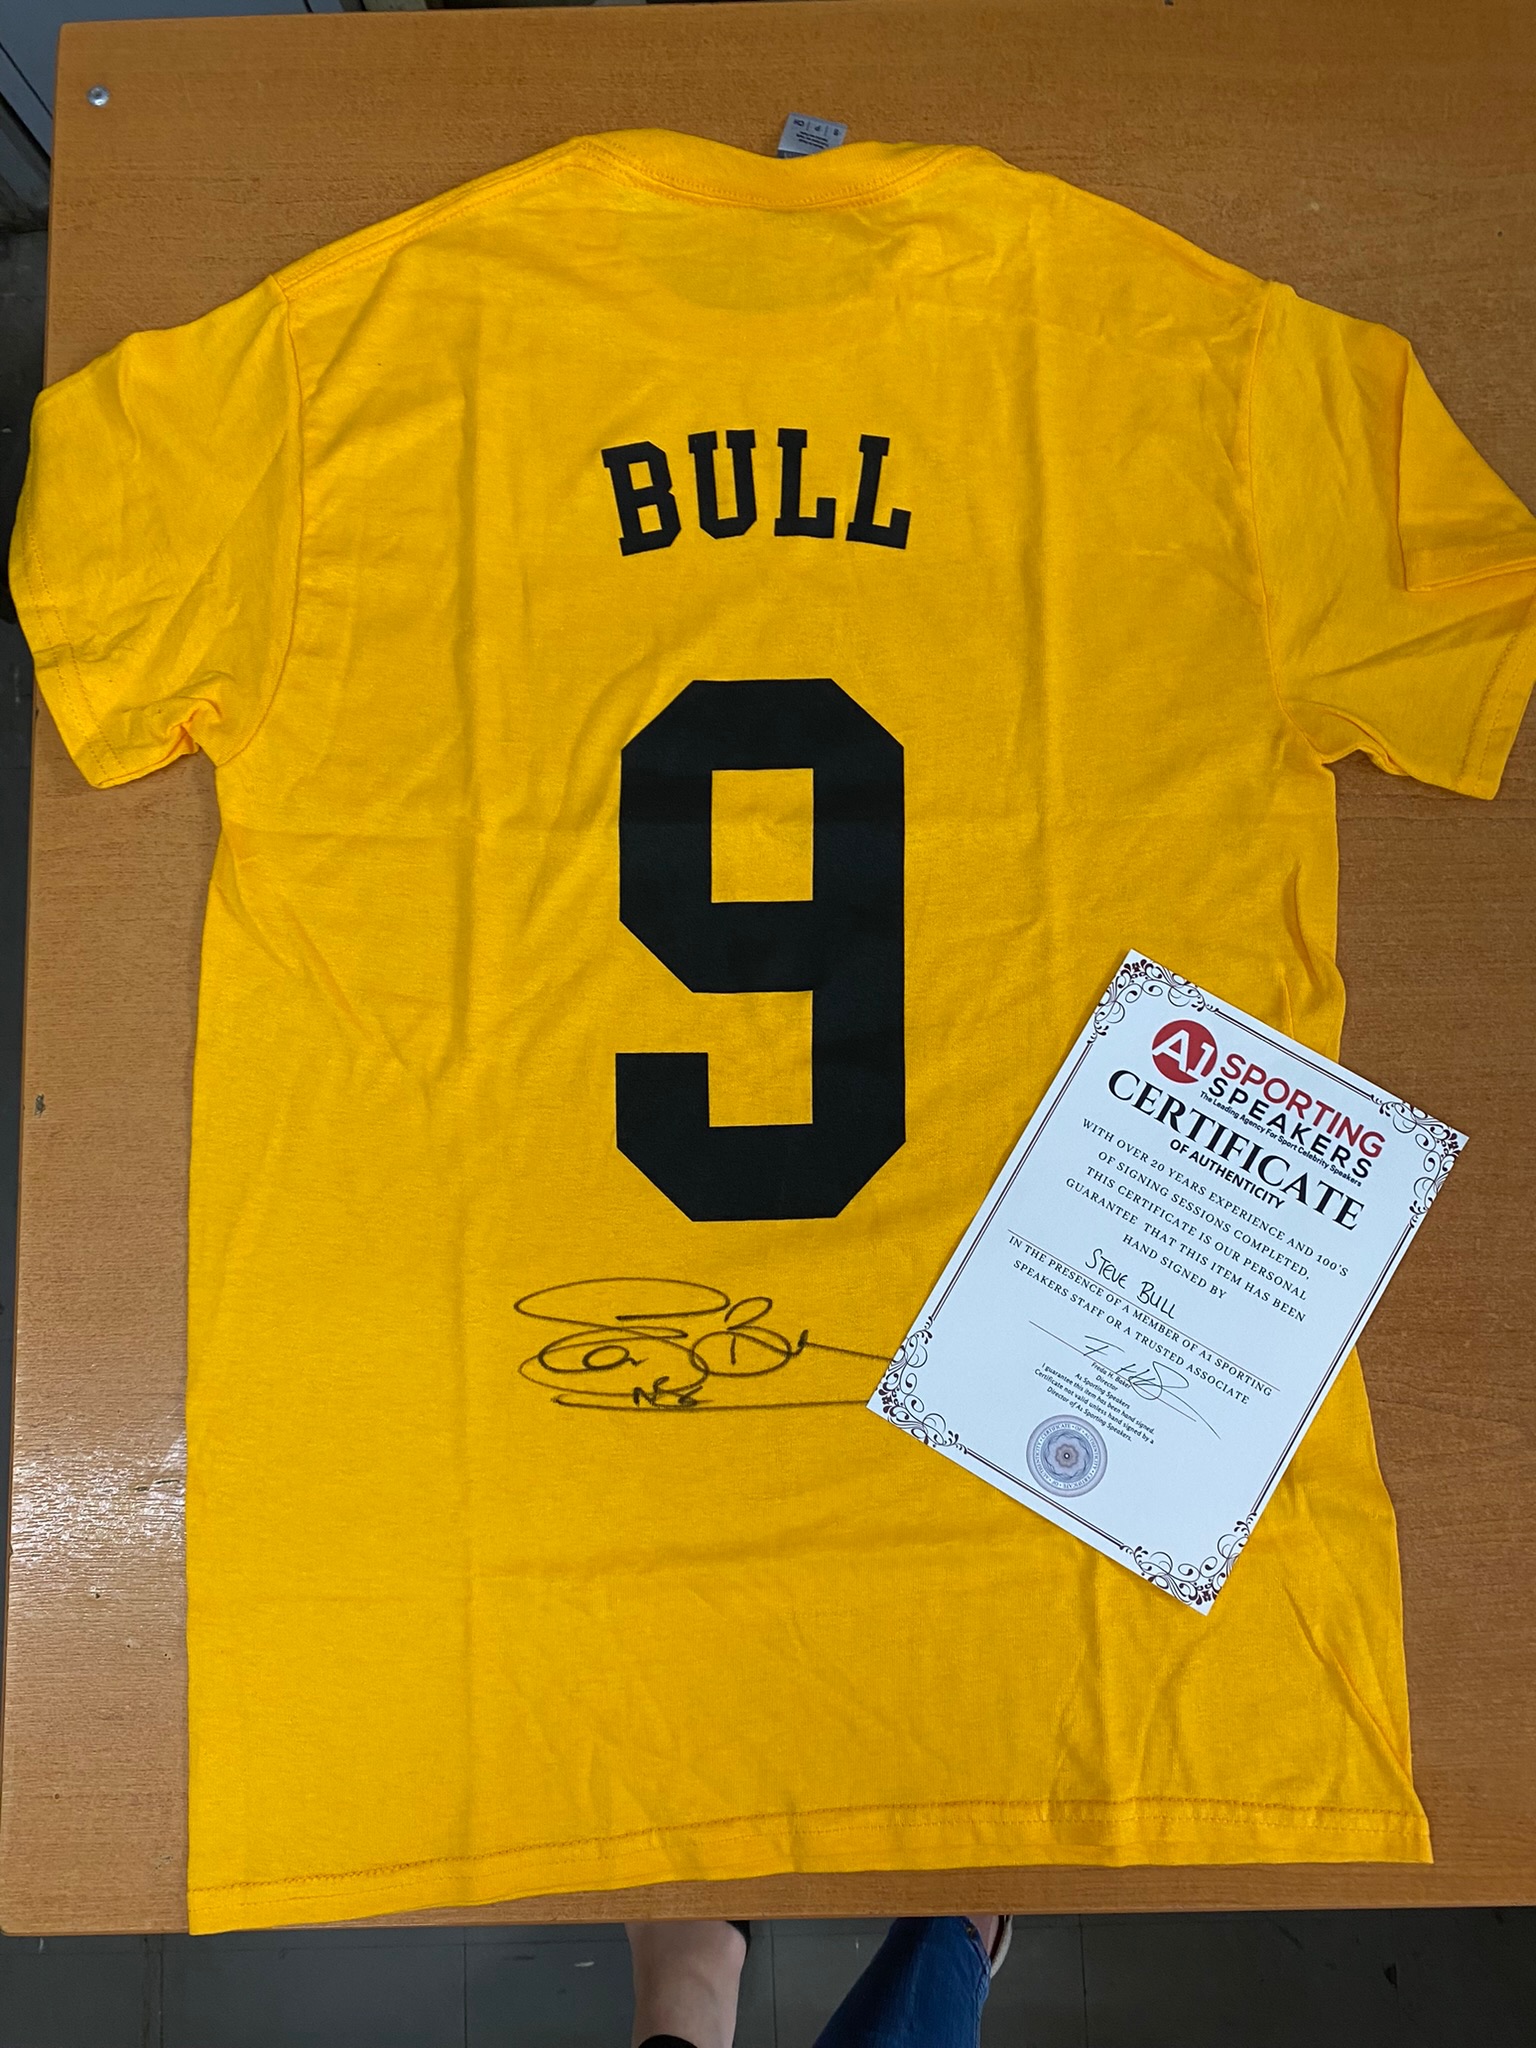 Steve Bull Signed Shirt - Image 2 of 2